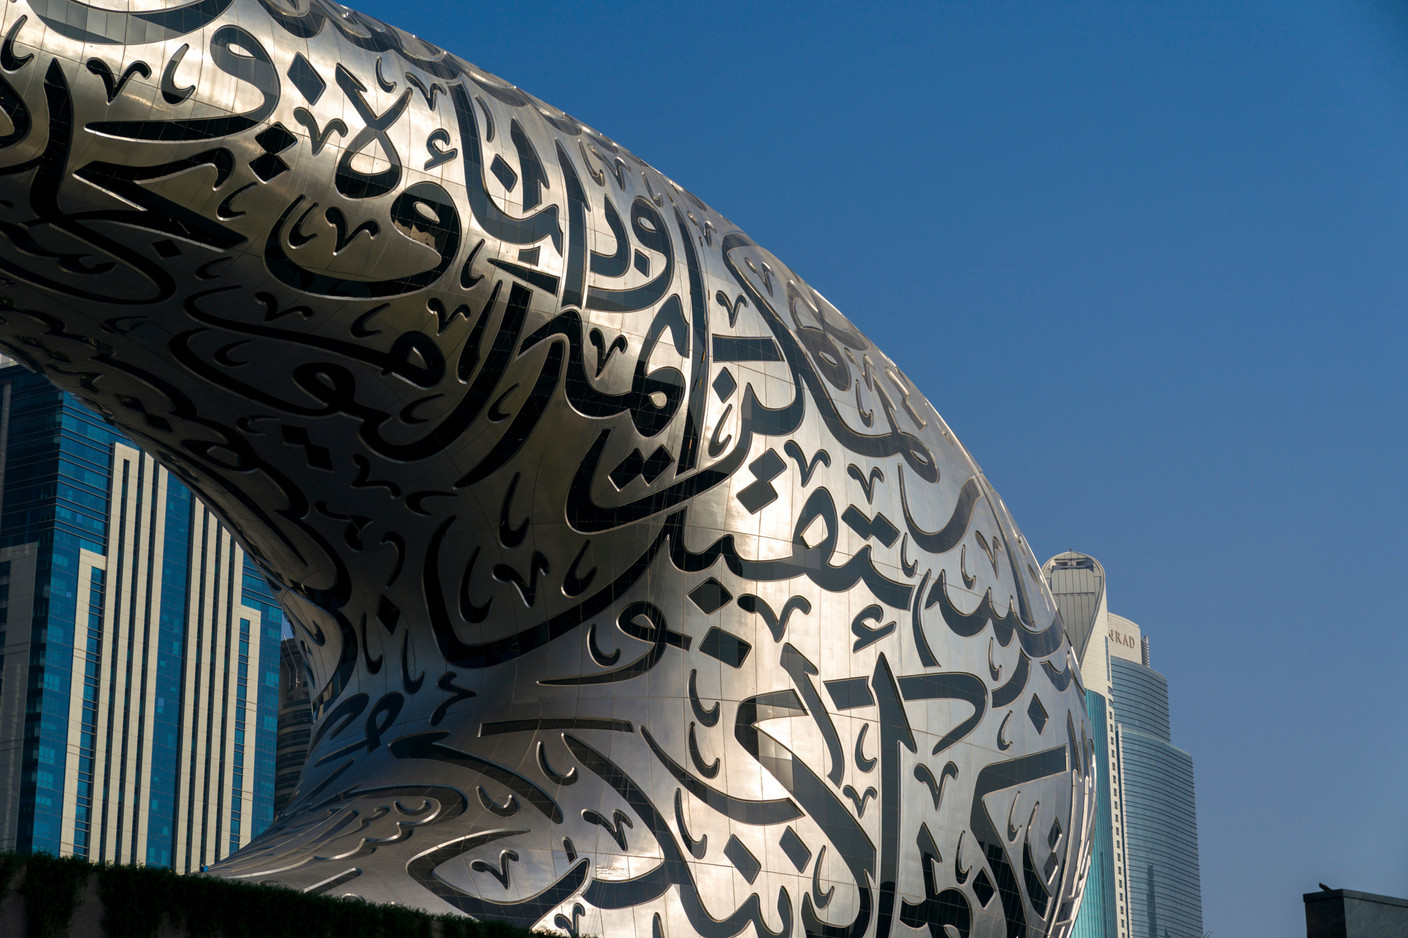 Avec plus de 20 millions de visiteurs attendus, dont 70% en provenance de l’étranger, la participation à l’Expo 2020 Dubai est une occasion unique de renforcer la visibilité du Luxembourg.  (Photo: SIP / Emmanuel Claude)